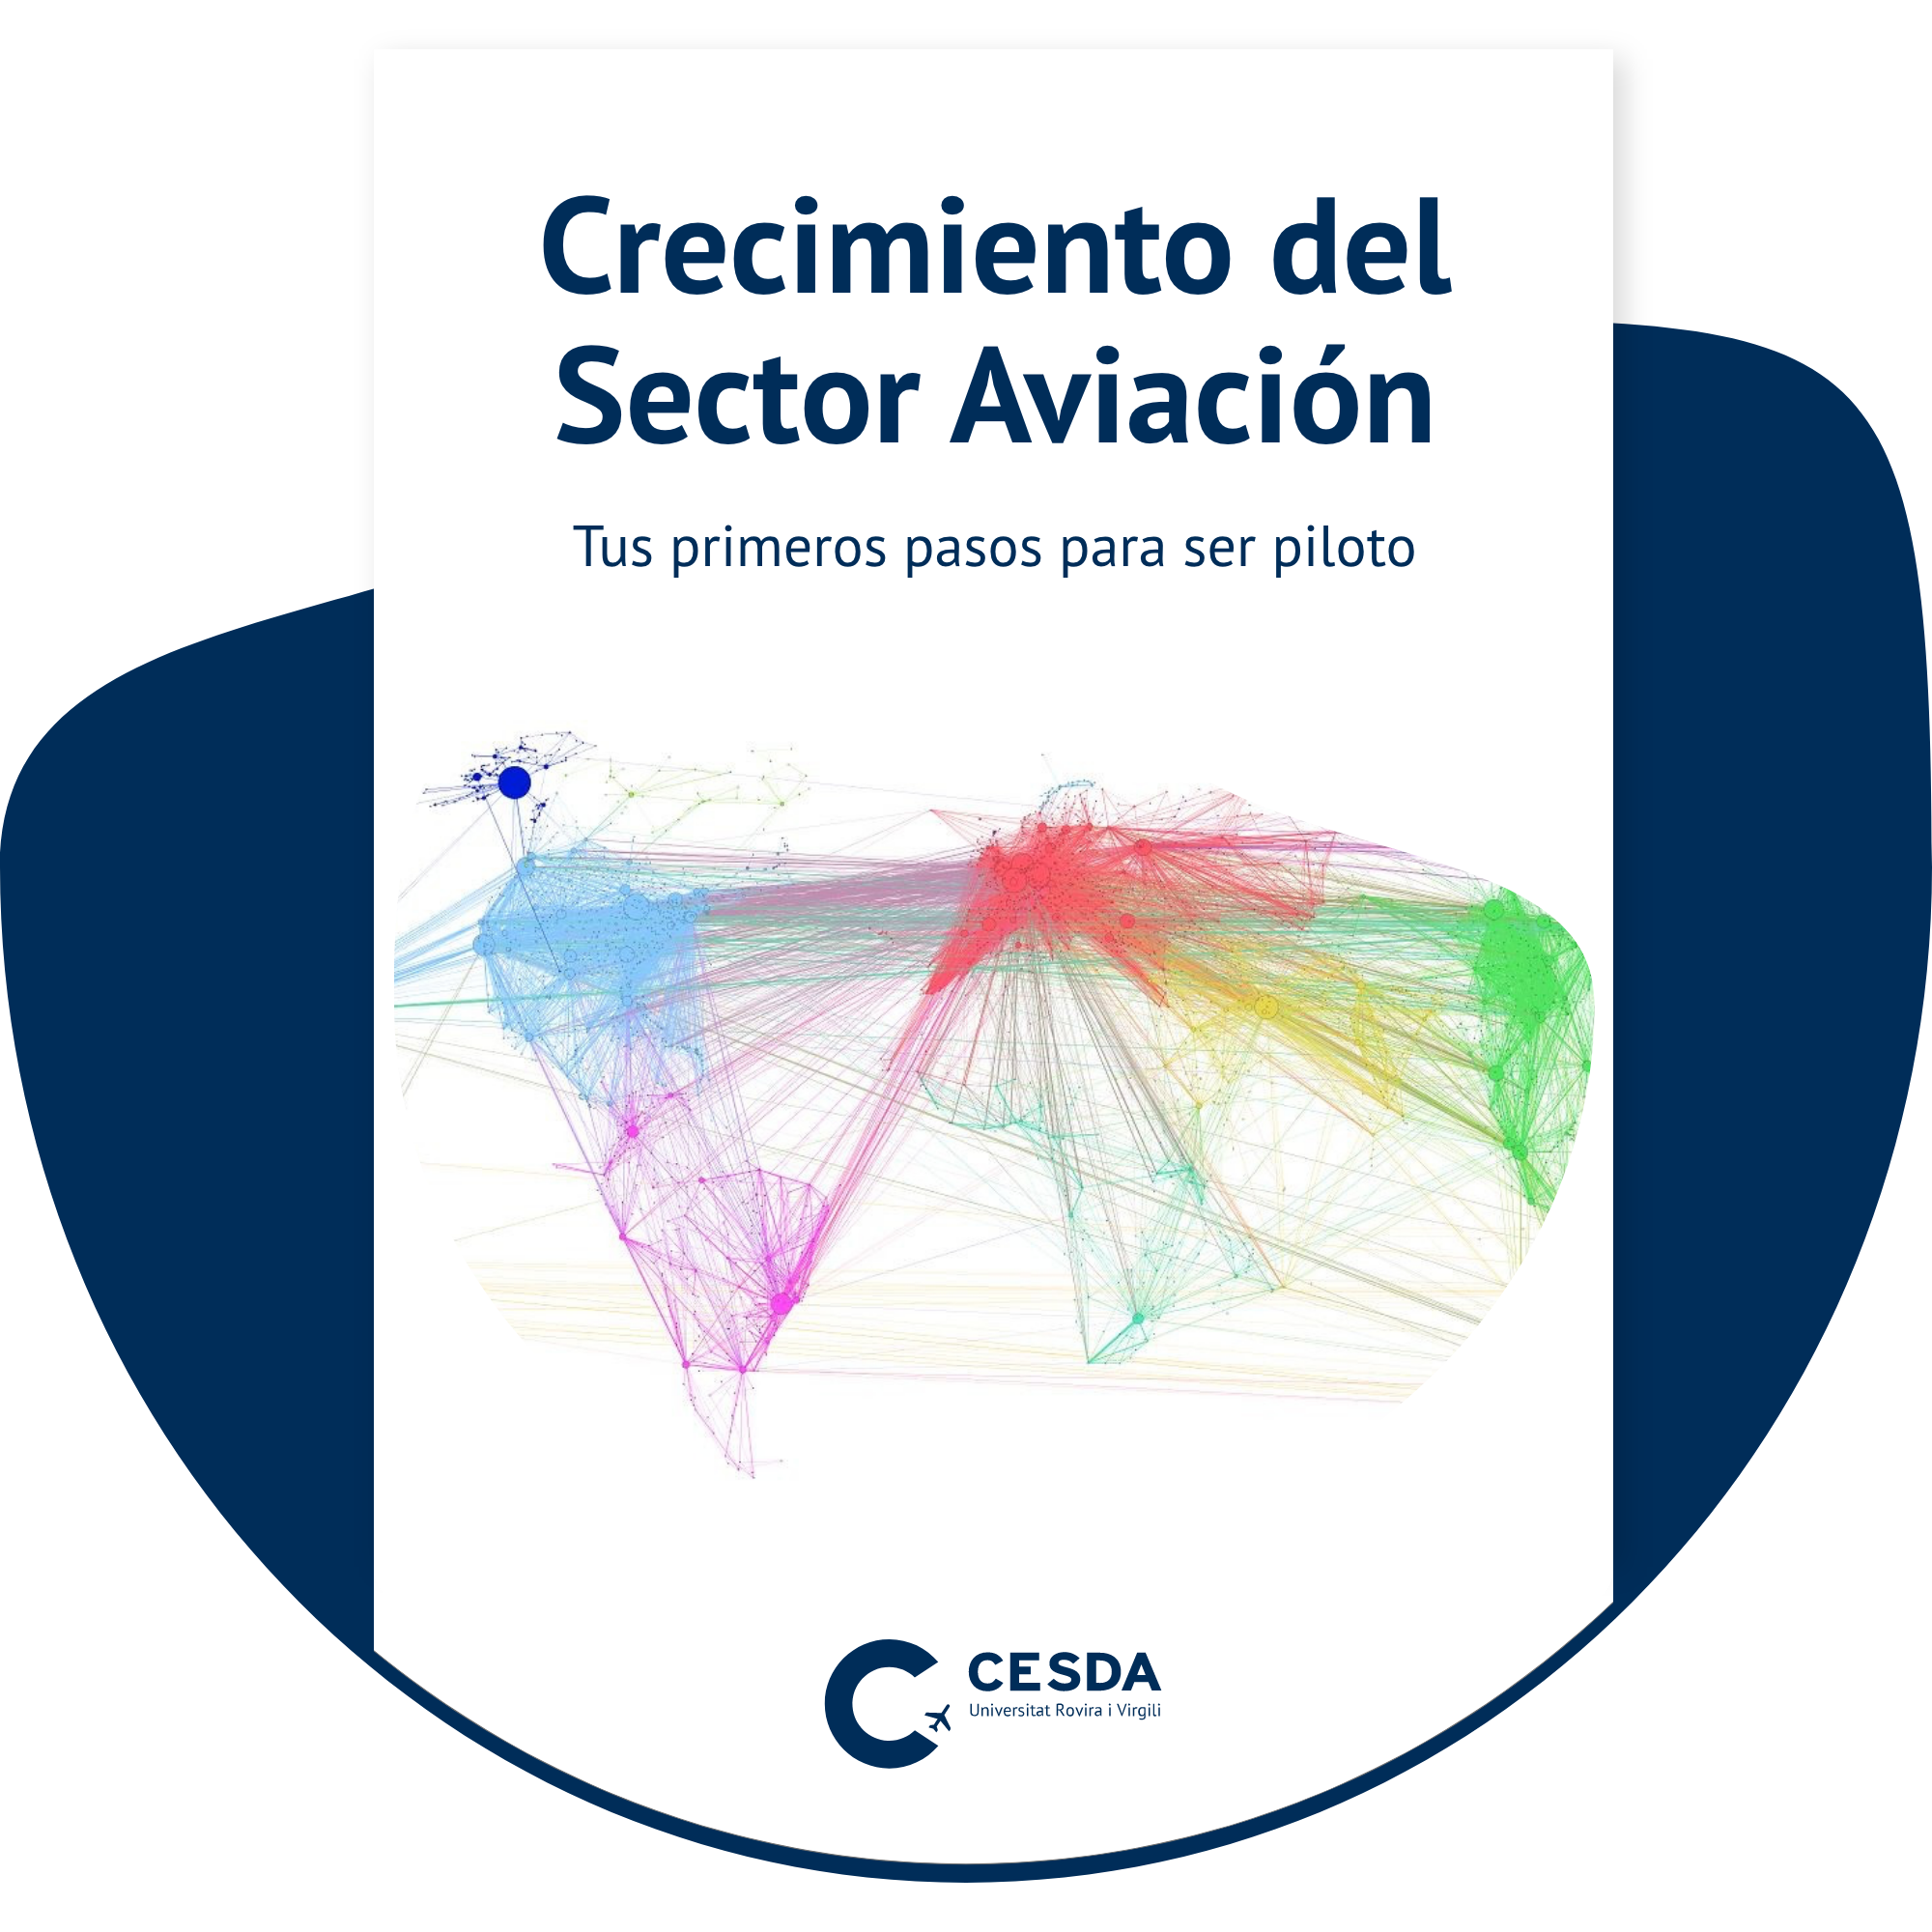 Crecimiento del Sector Aviación